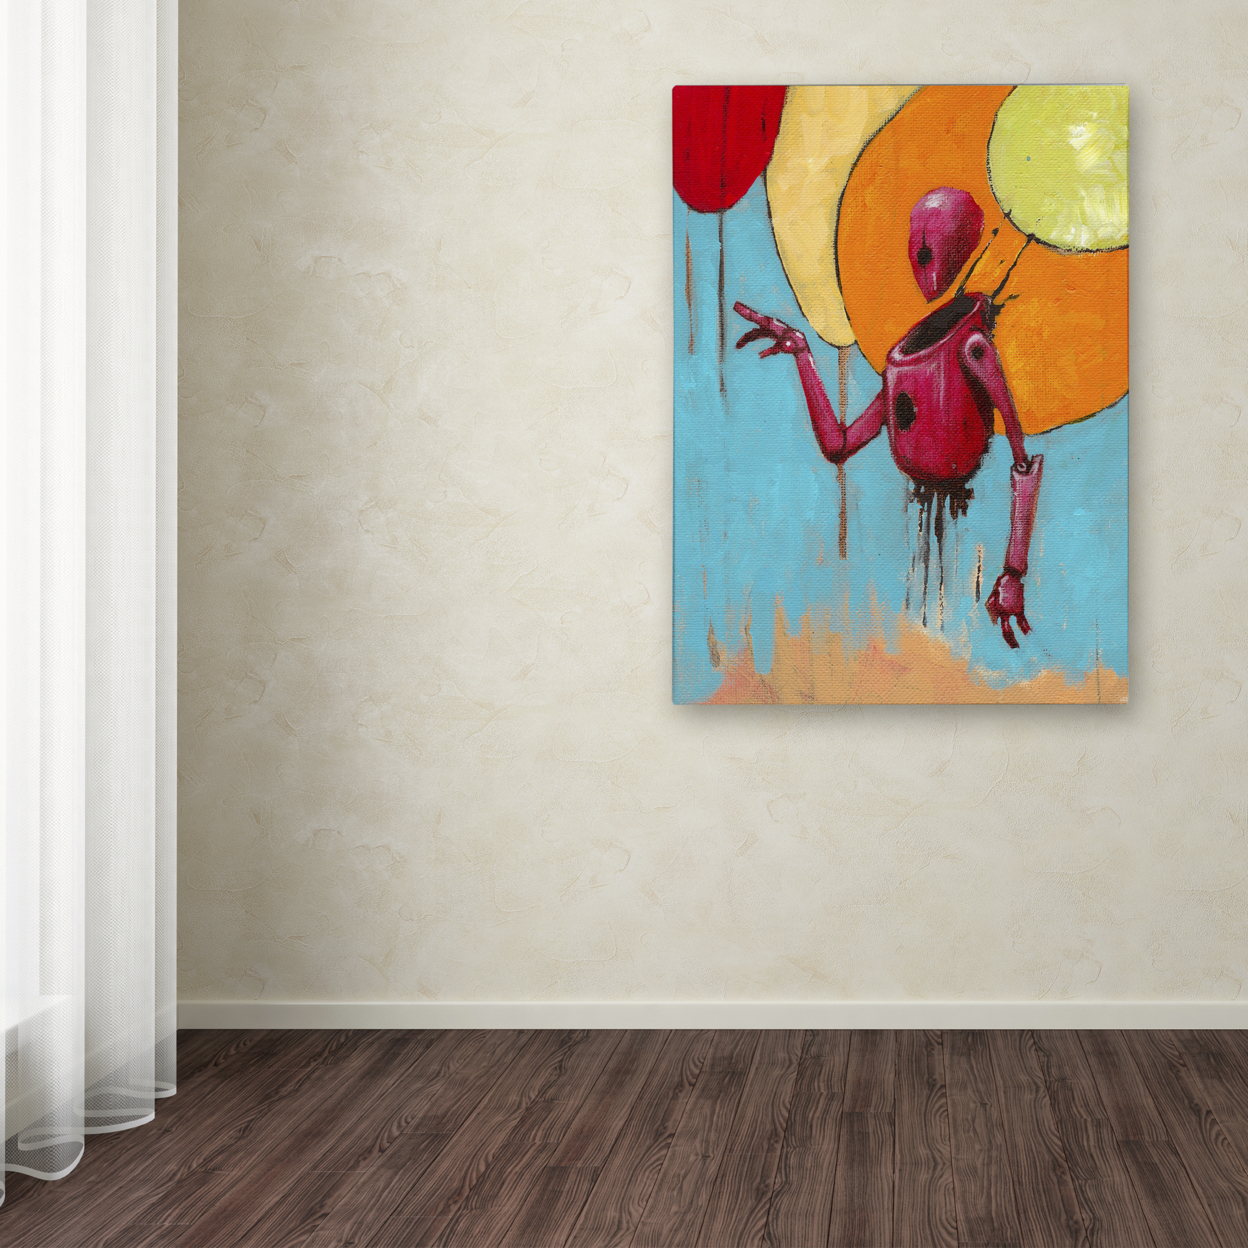 Craig Snodgrass 'Red Junk Robot' Canvas Art 18 X 24